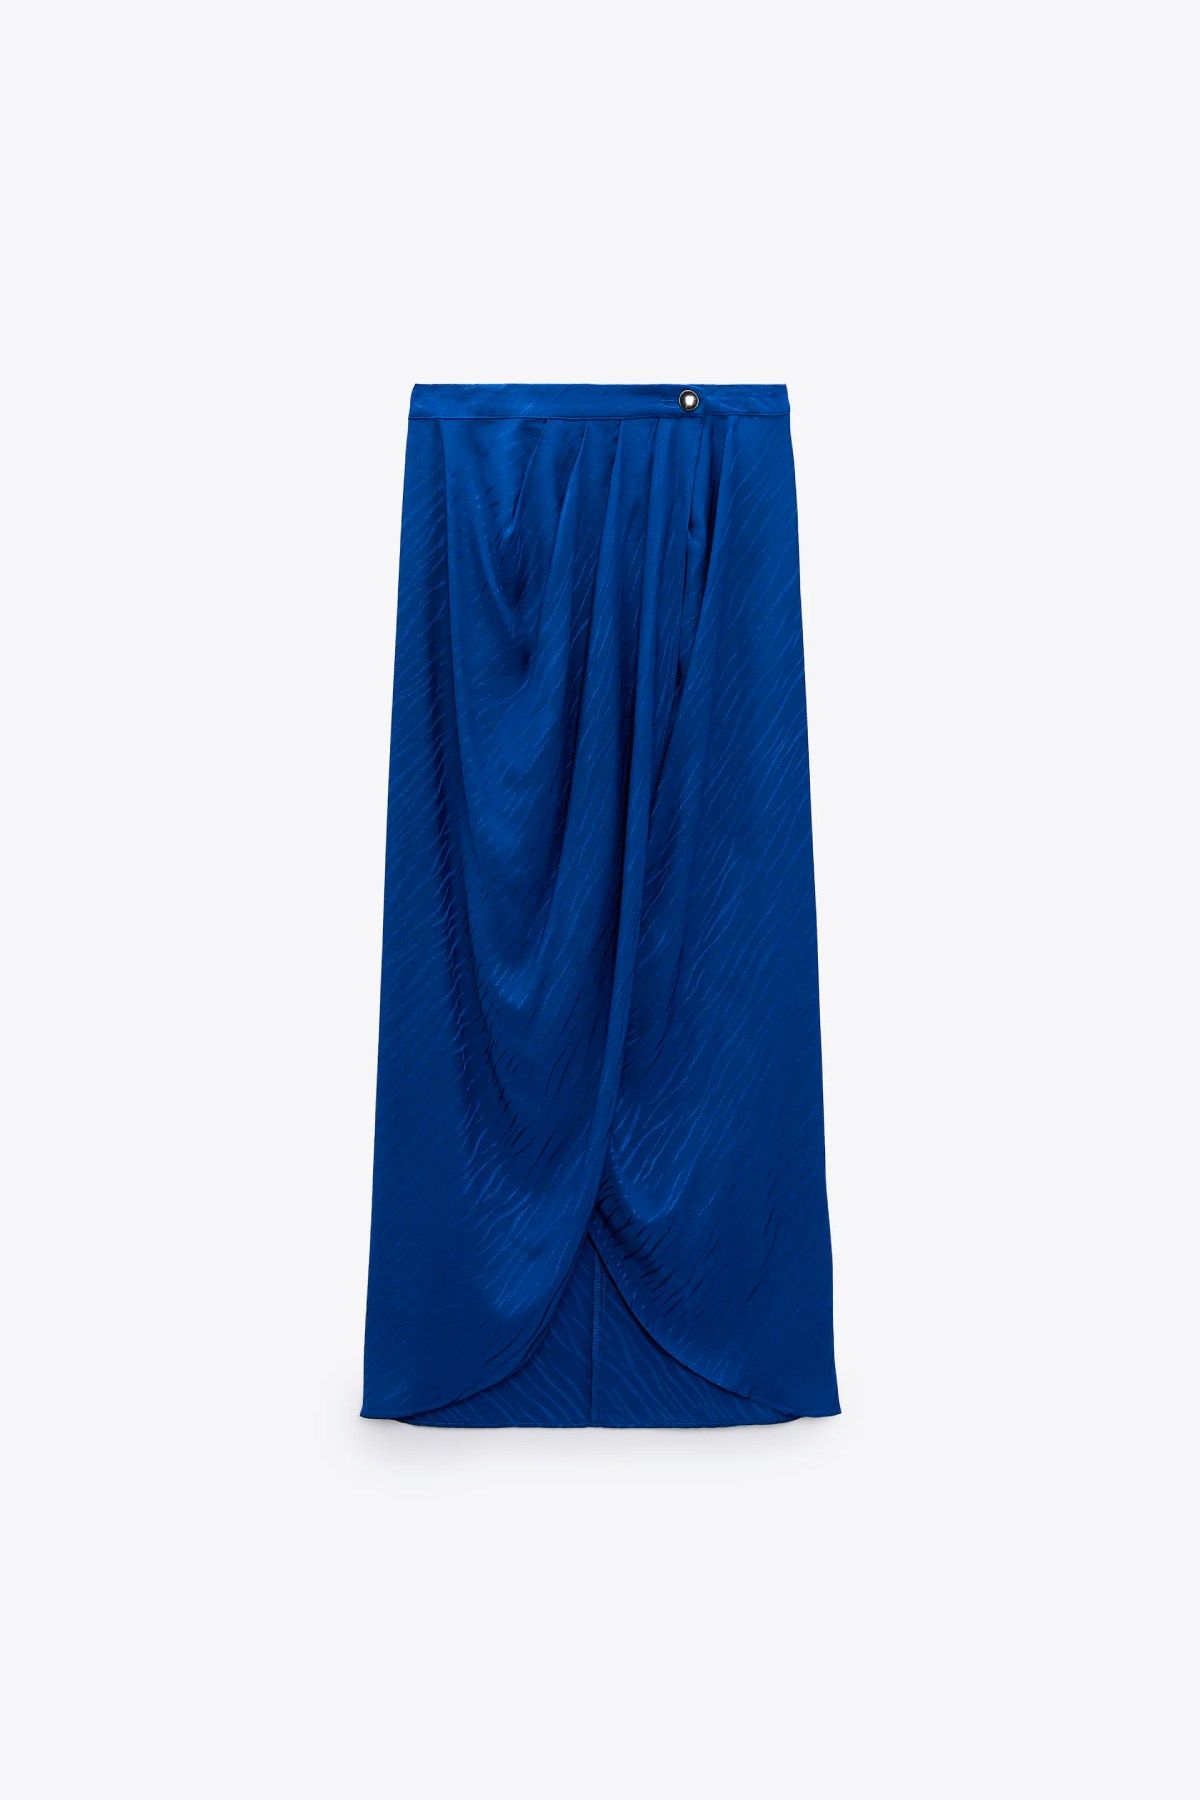 Falda pareo en tono azul de Zara